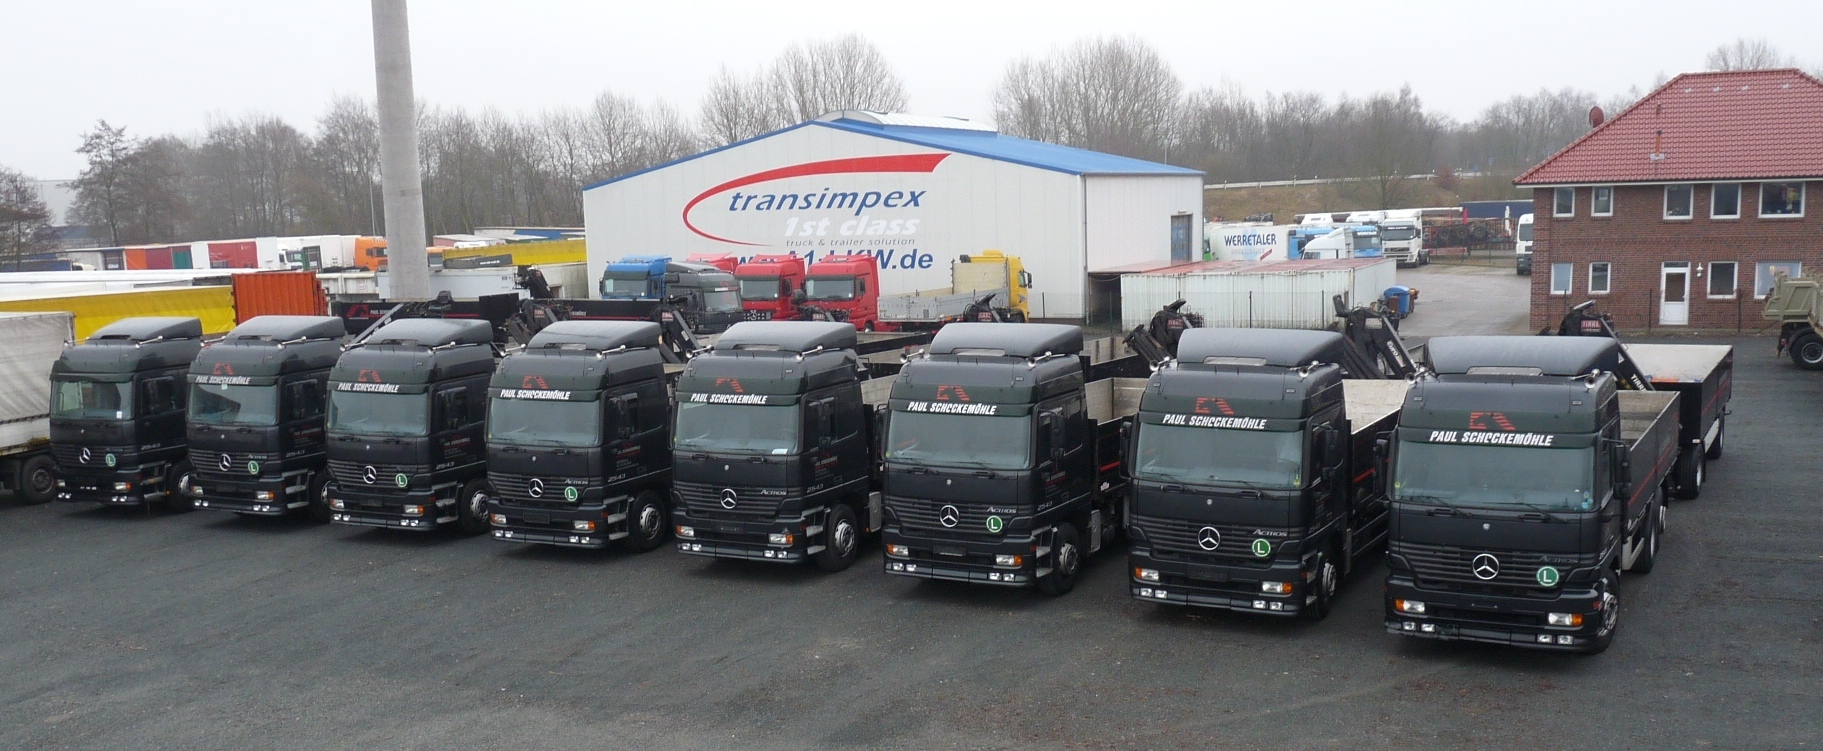 A1-Truck GmbH undefined: bild 2